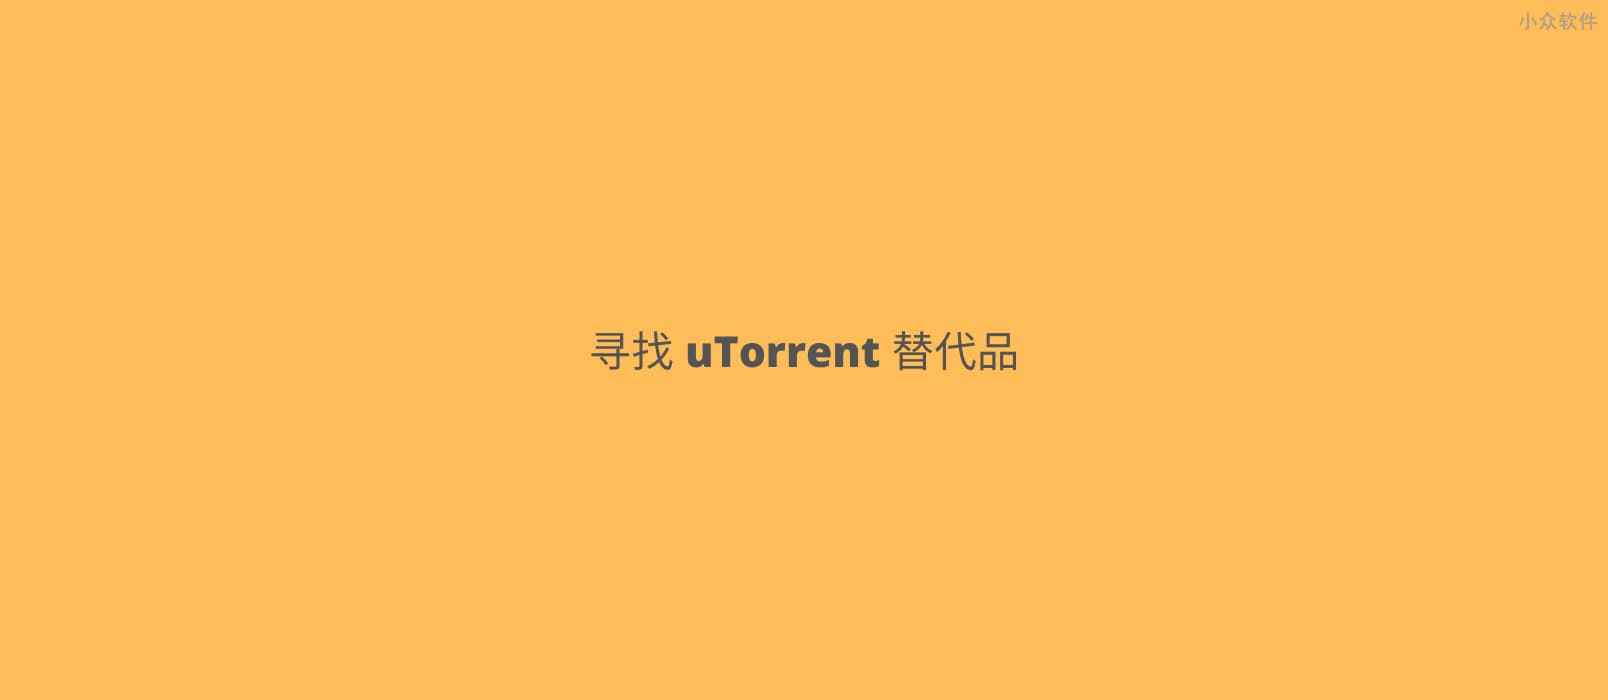 爆 uTorrent 被多款杀毒软件查杀，有什么好用的替代品吗？ 1